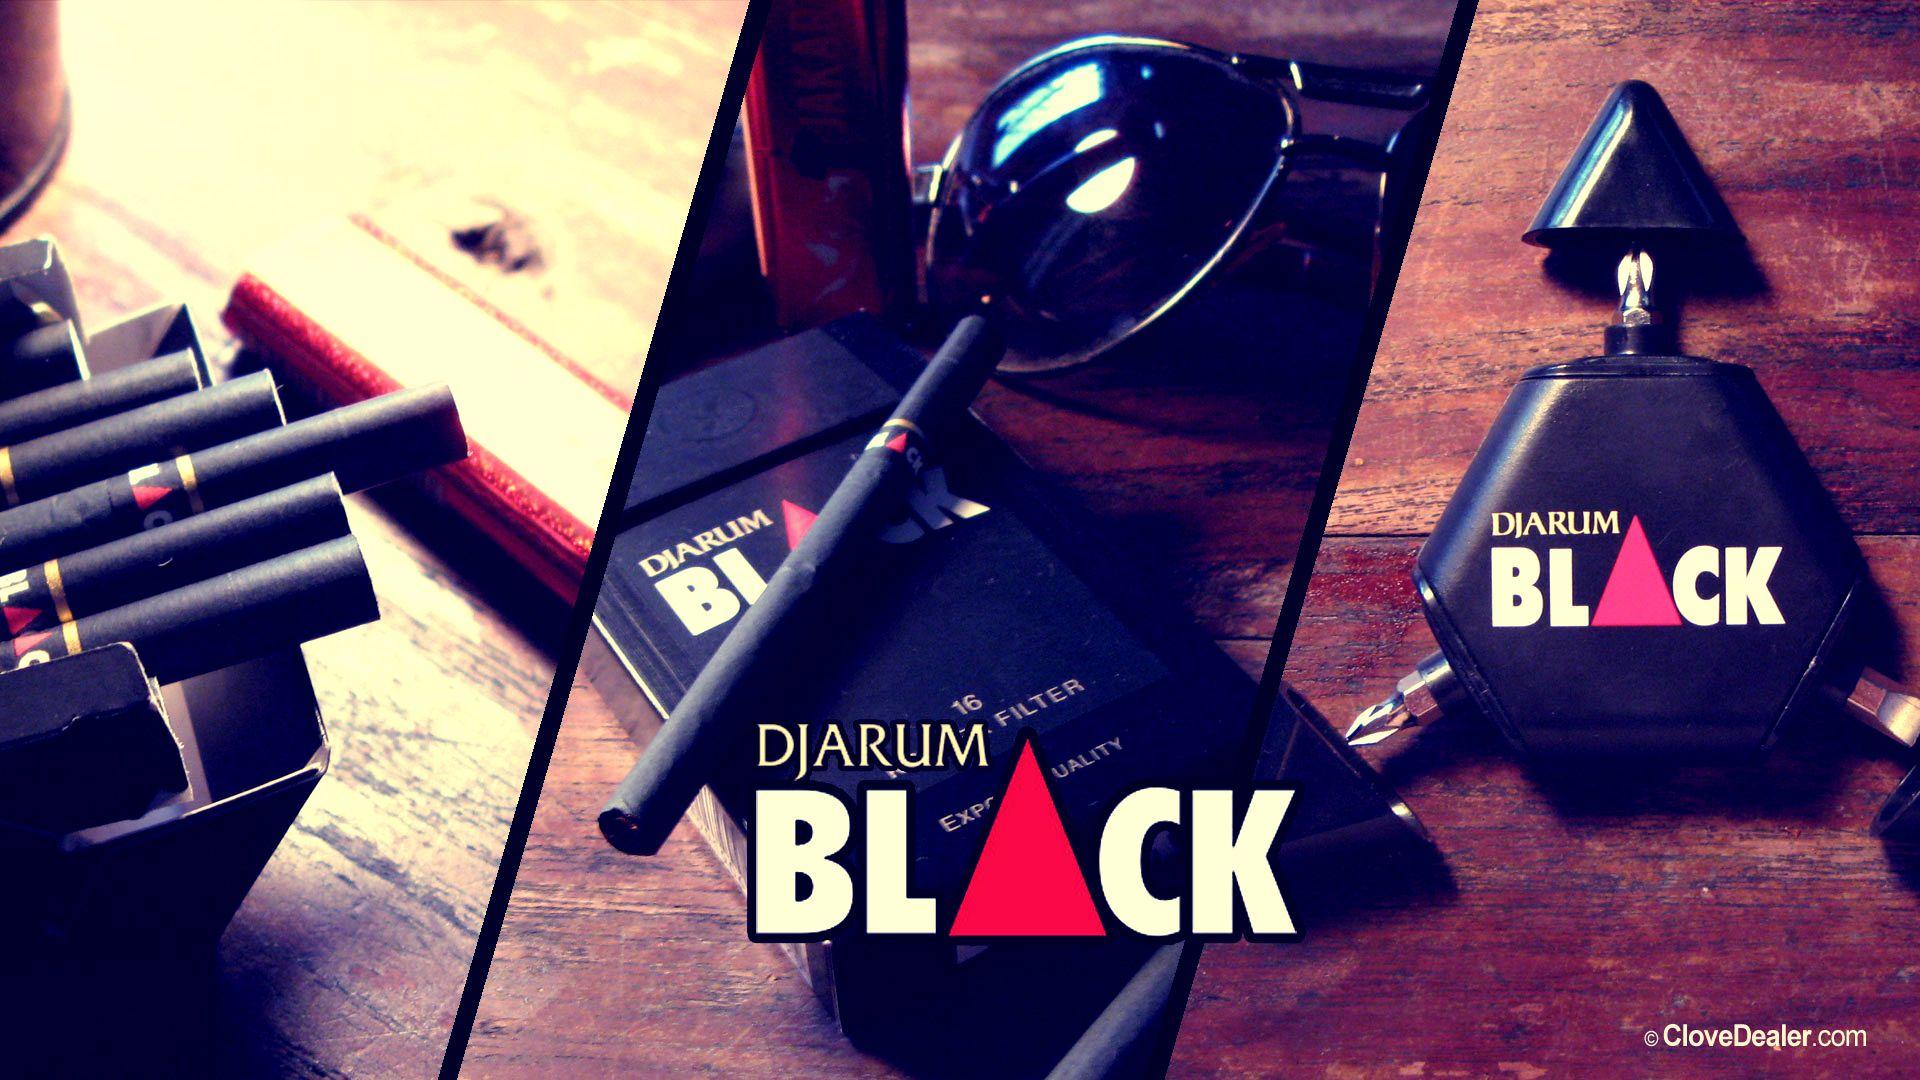 Djarum Black HD Wallpaper